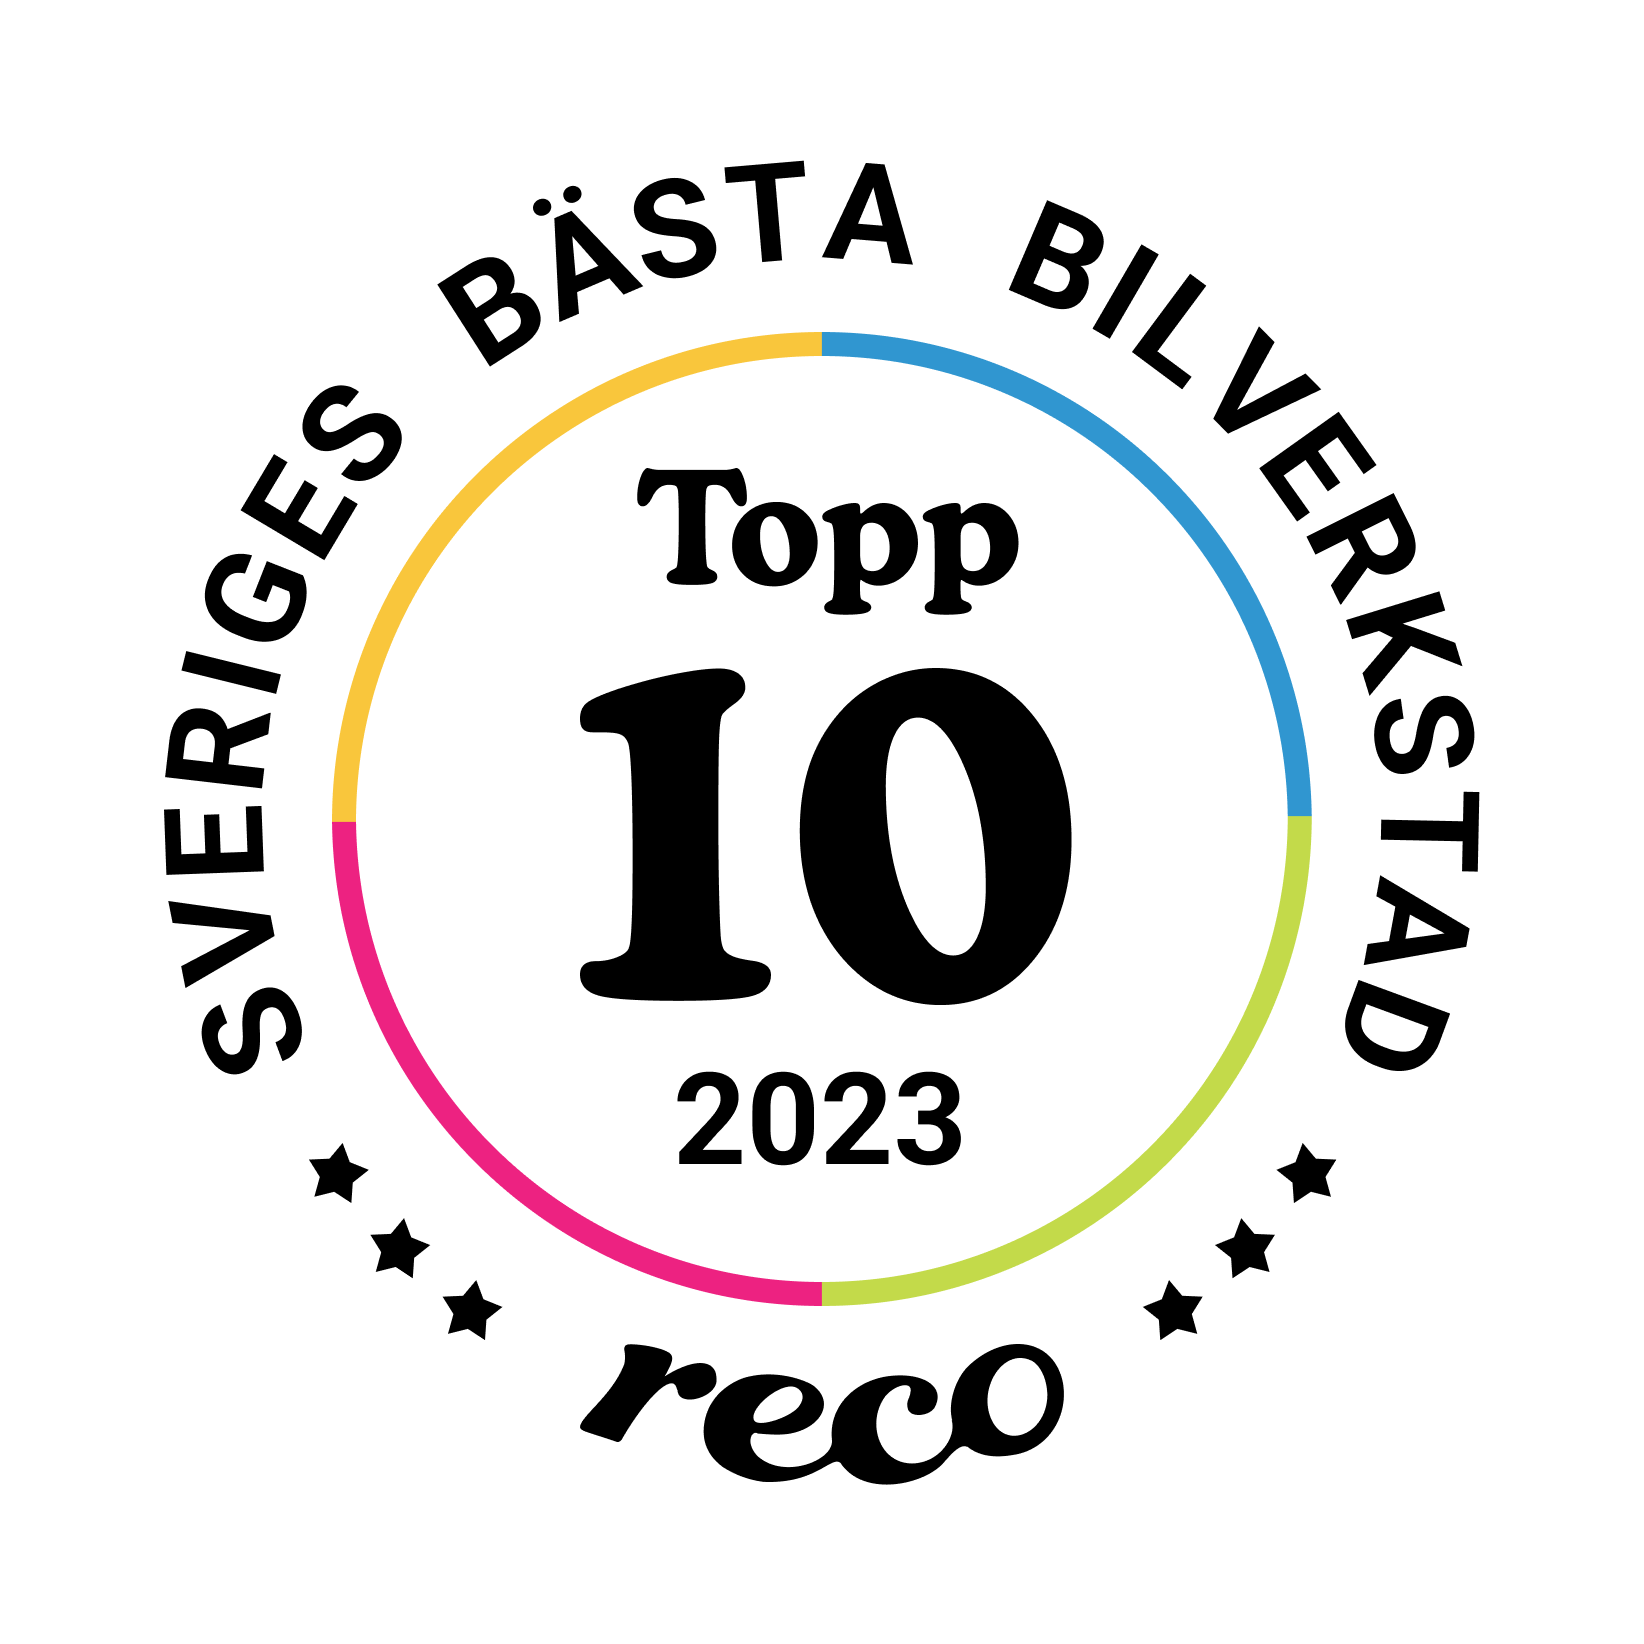 Bagde - Best in Sweden - Bilverkstad - Top Ten@2x